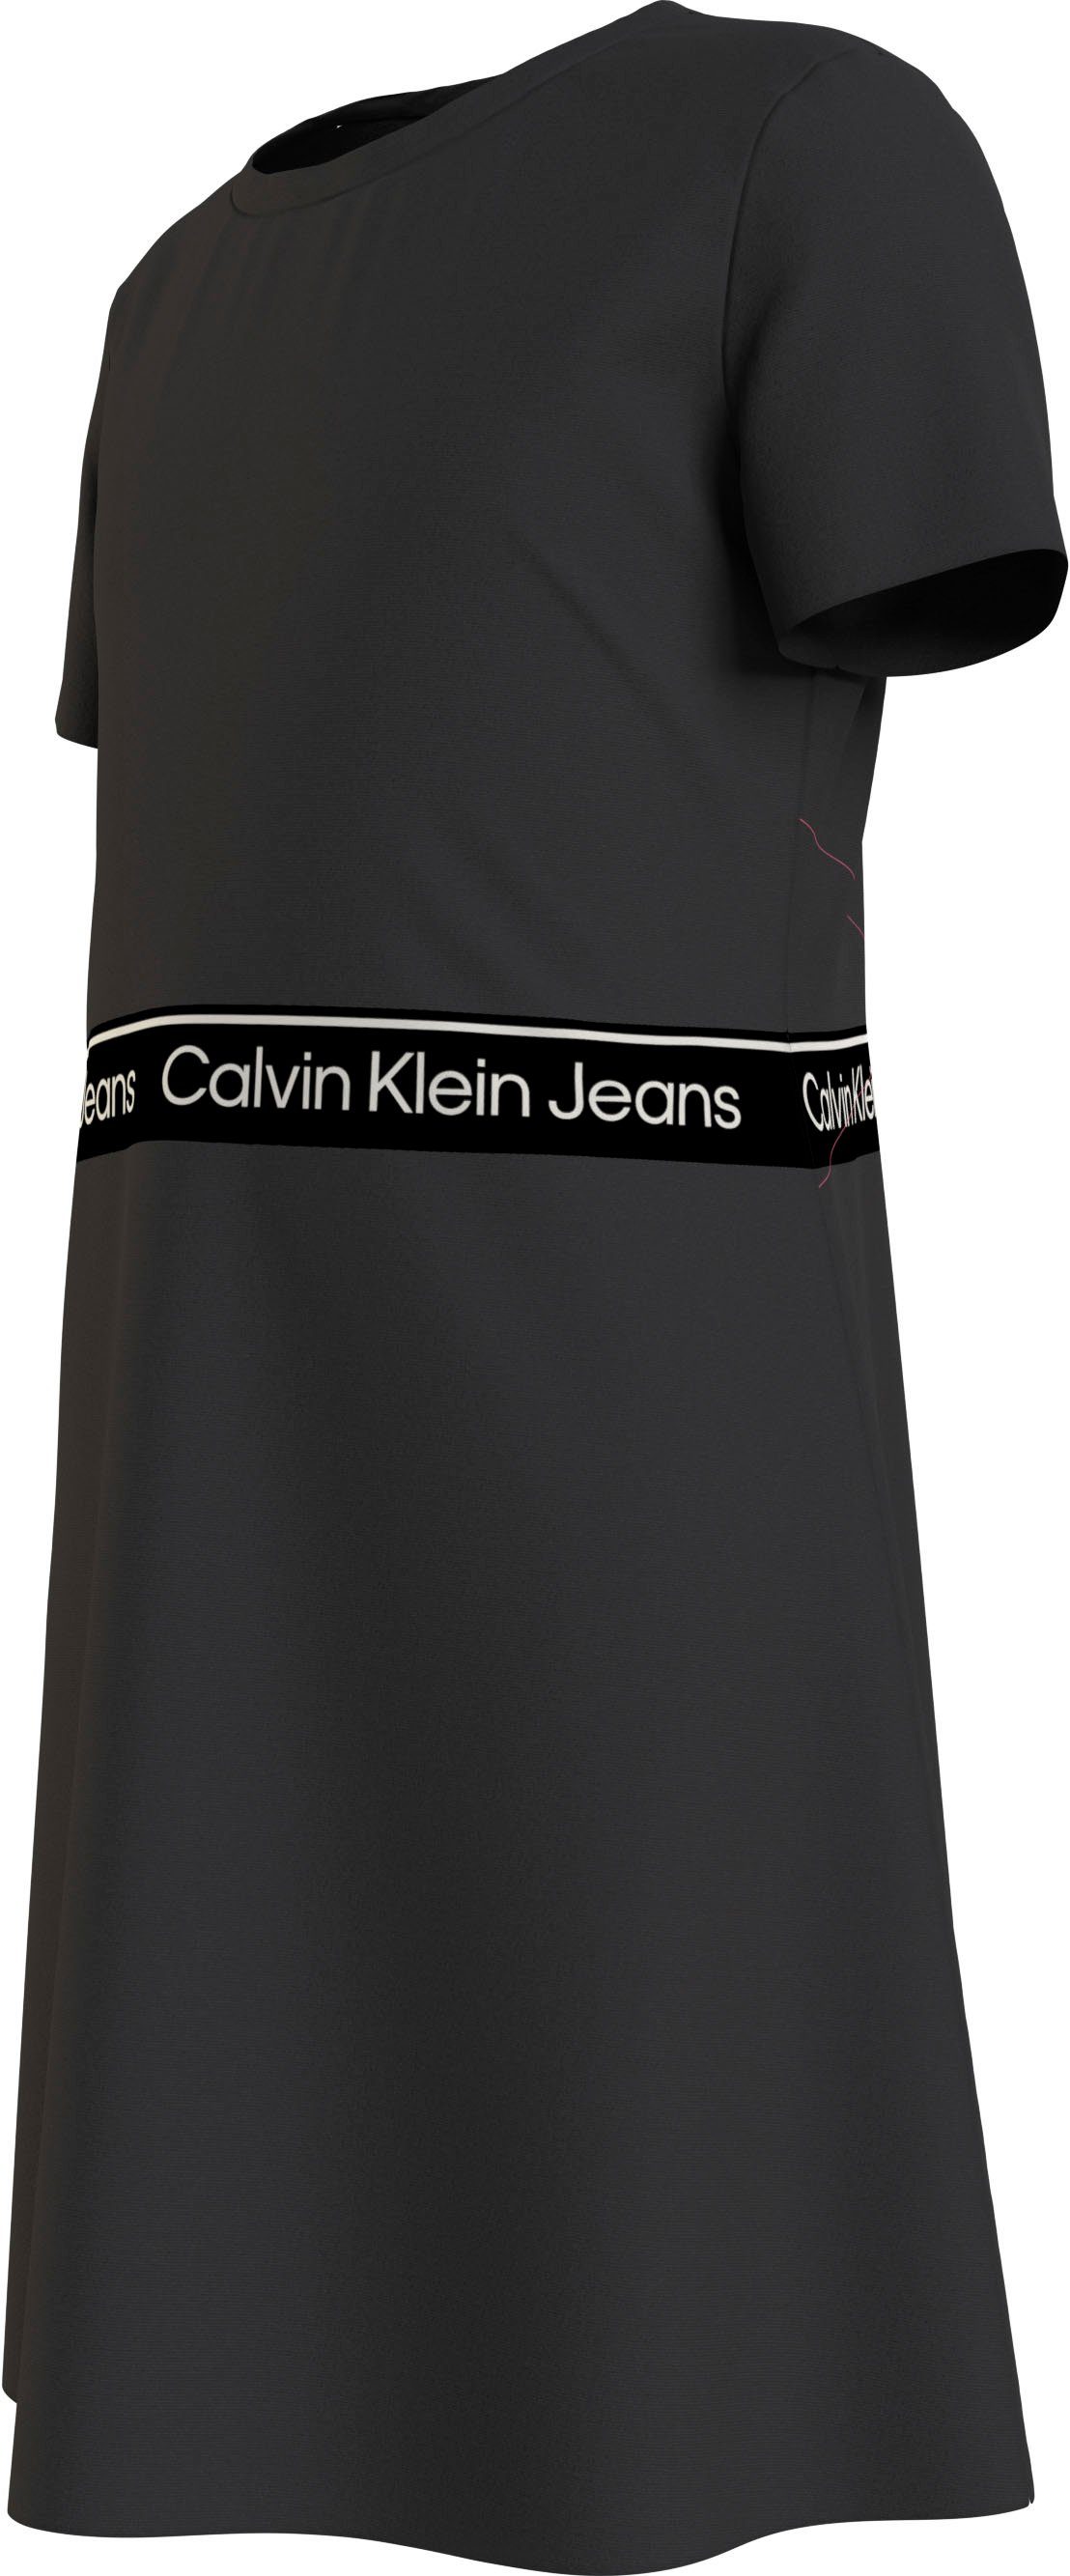 Calvin Klein DRESS SS Ck Jeans Black PUNTO LOGO TAPE Skaterkleid